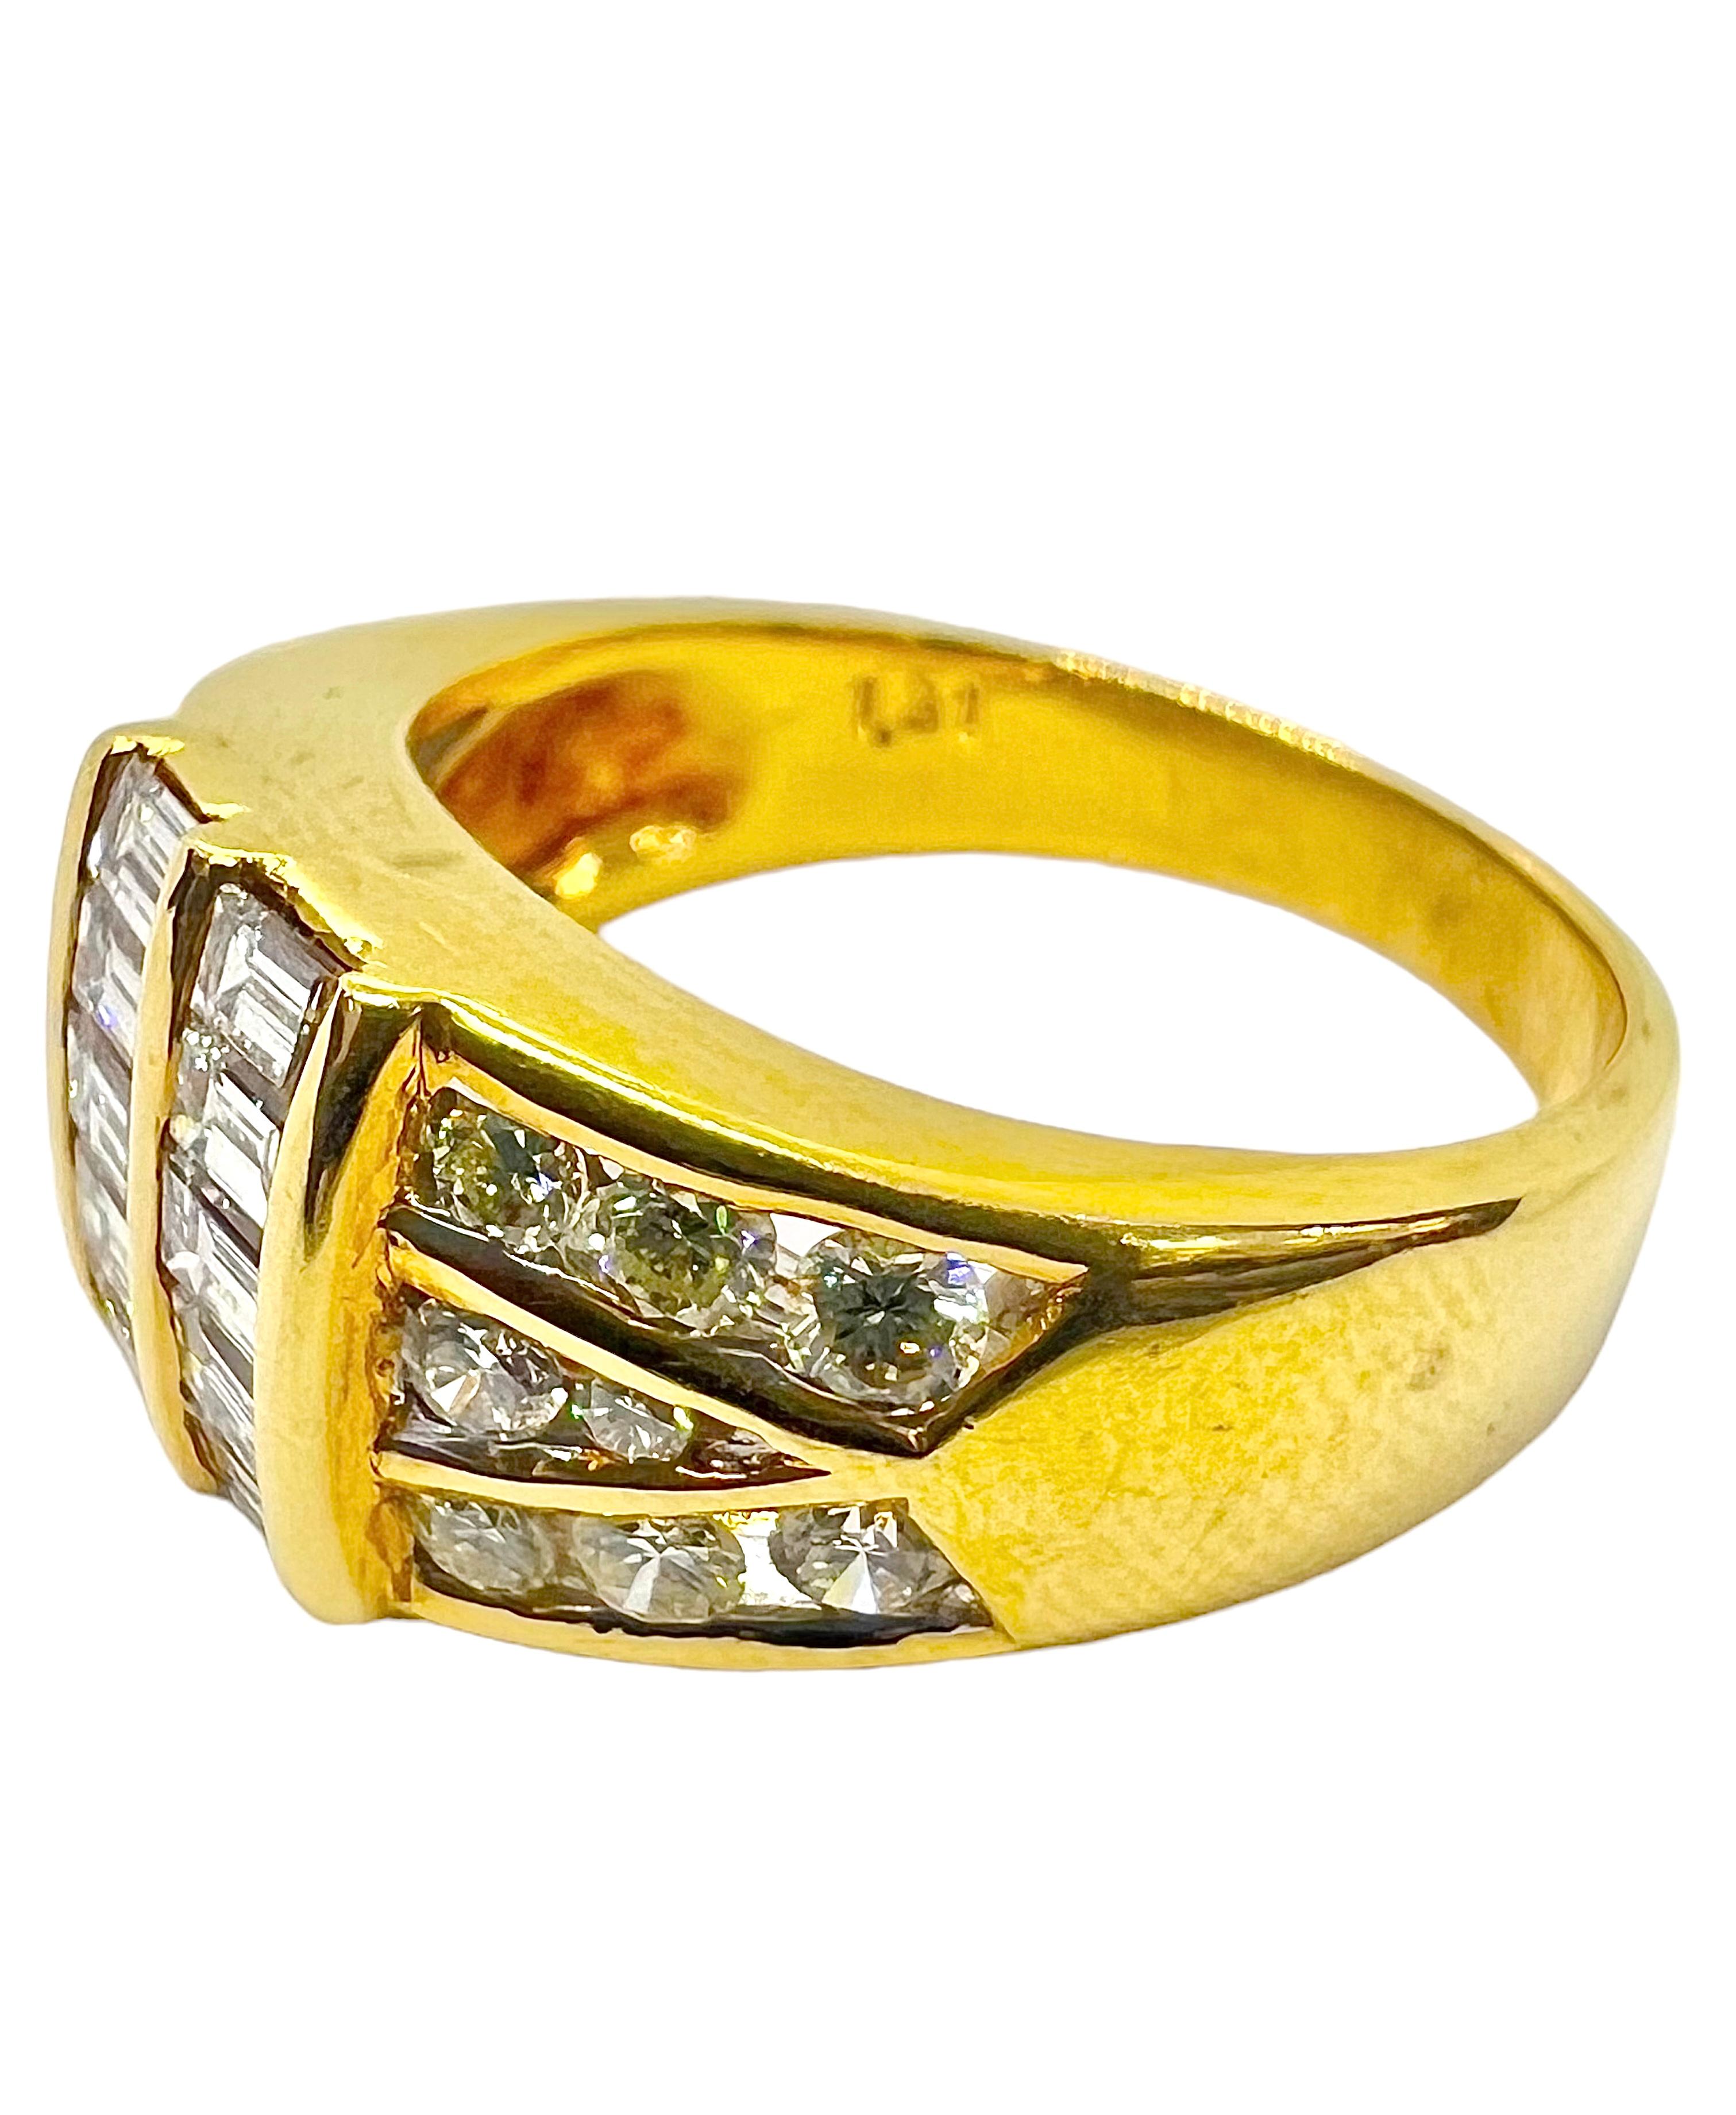 Ring aus 18 Karat Gelbgold mit Diamanten im Smaragdschliff und runden Diamanten.

Sophia D von Joseph Dardashti LTD ist seit 35 Jahren weltweit bekannt und lässt sich vom klassischen Art-Déco-Design inspirieren, das mit modernen Fertigungstechniken